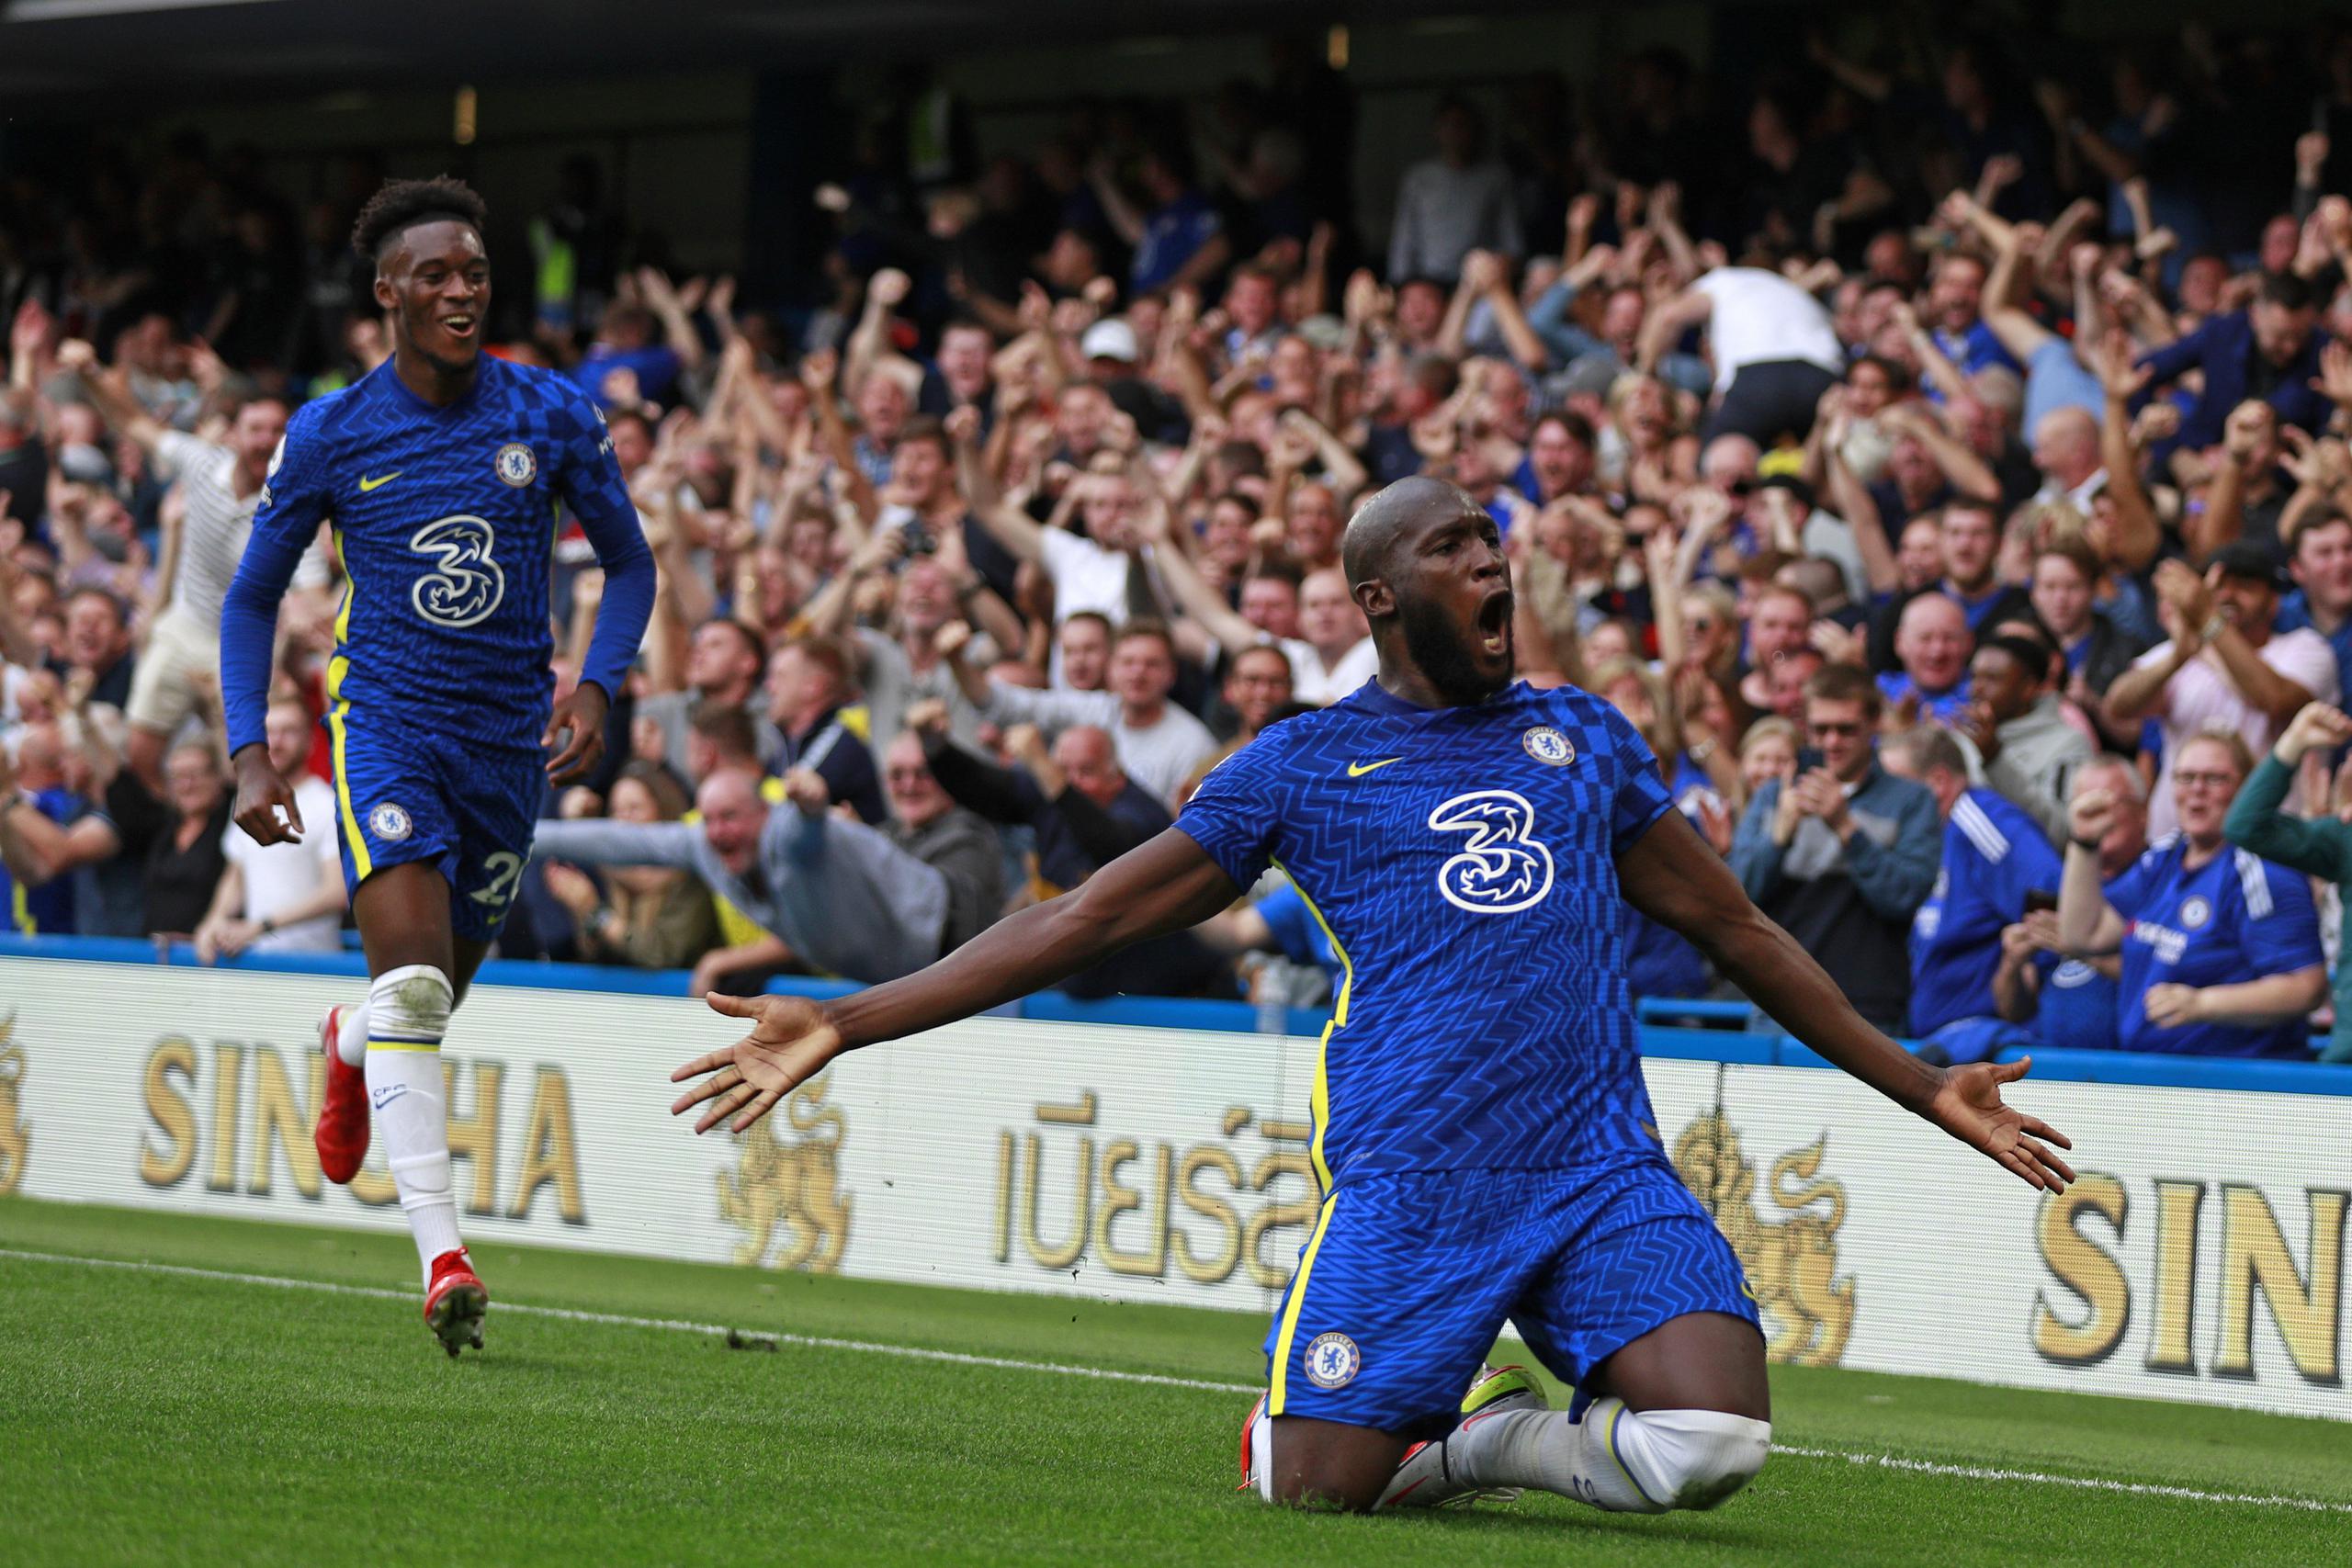 El delantero Romelu Lukaku (derecha) celebra tras anotar el primer gol de Chelsea en la victoria ante Aston Villa, el sábado 11 de septiembre de 2021.